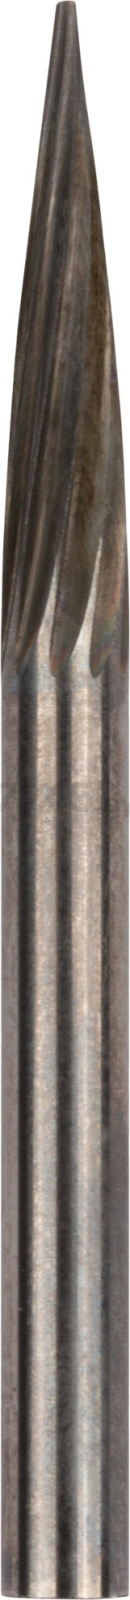 Шарошка коническая хвостовик 3 мм FIT Профи (36586)